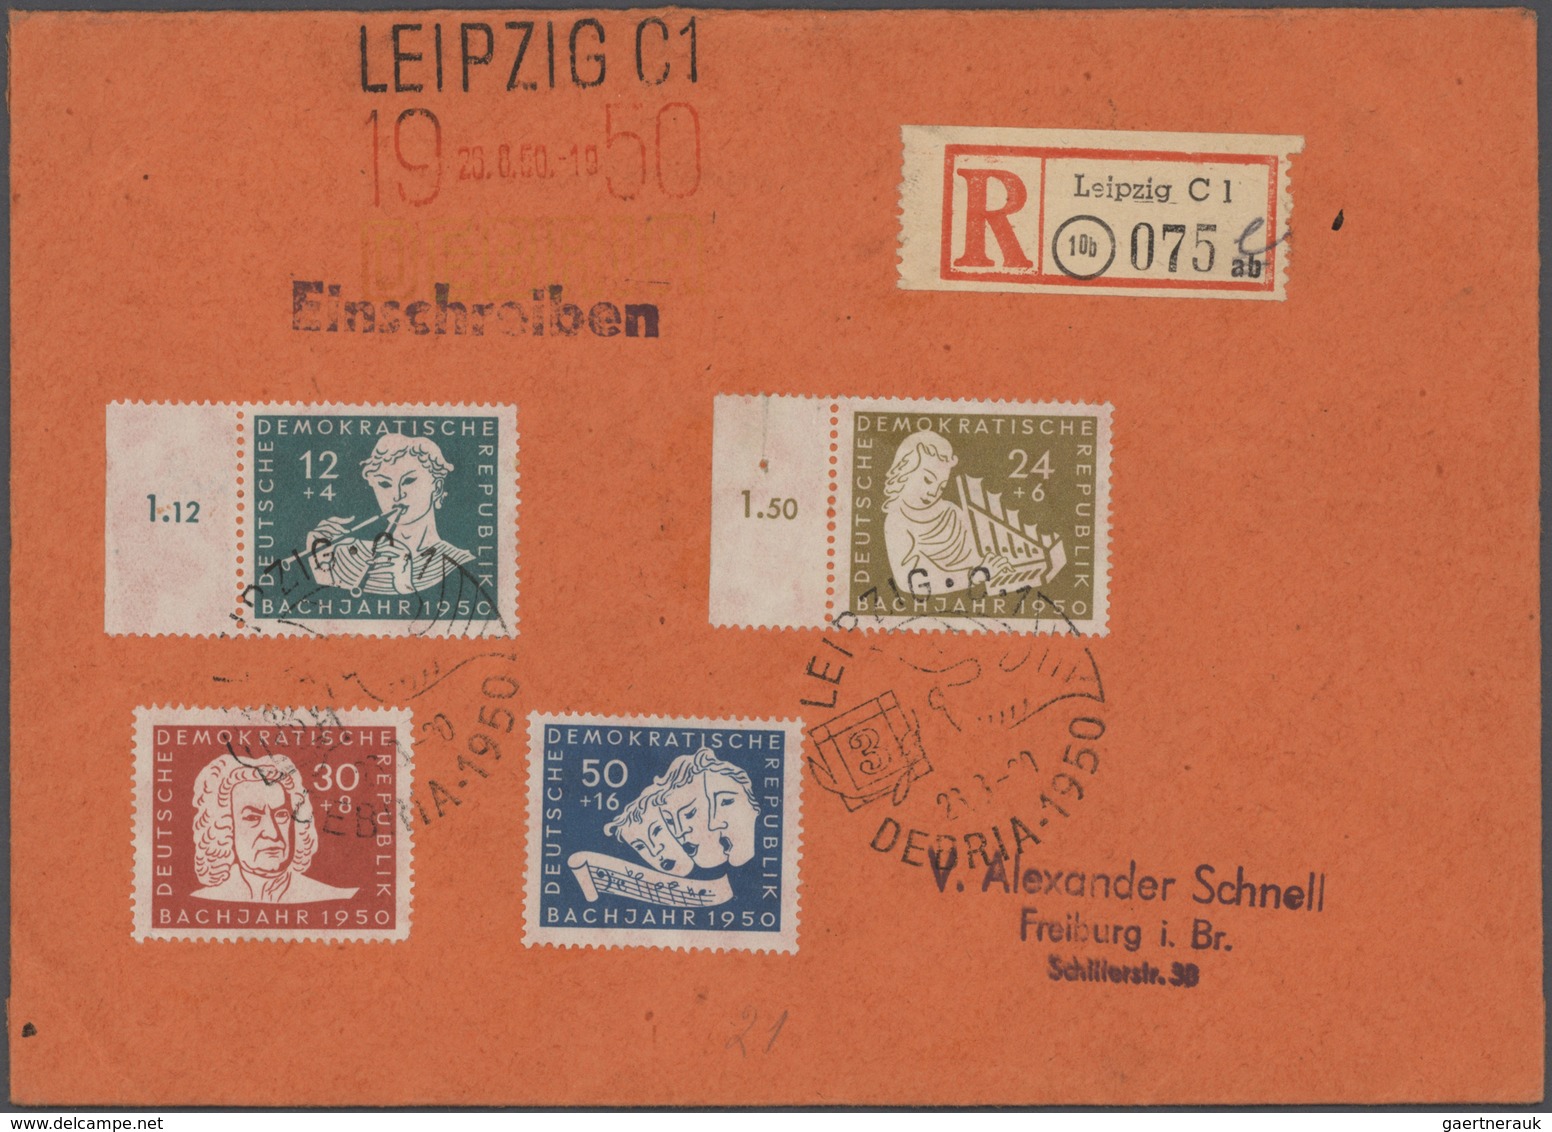 32295 DDR: 1949/1990, reichhaltiger Sammlungsbestand von einigen hundert Briefen, FDCs und Ganzsachen, dur